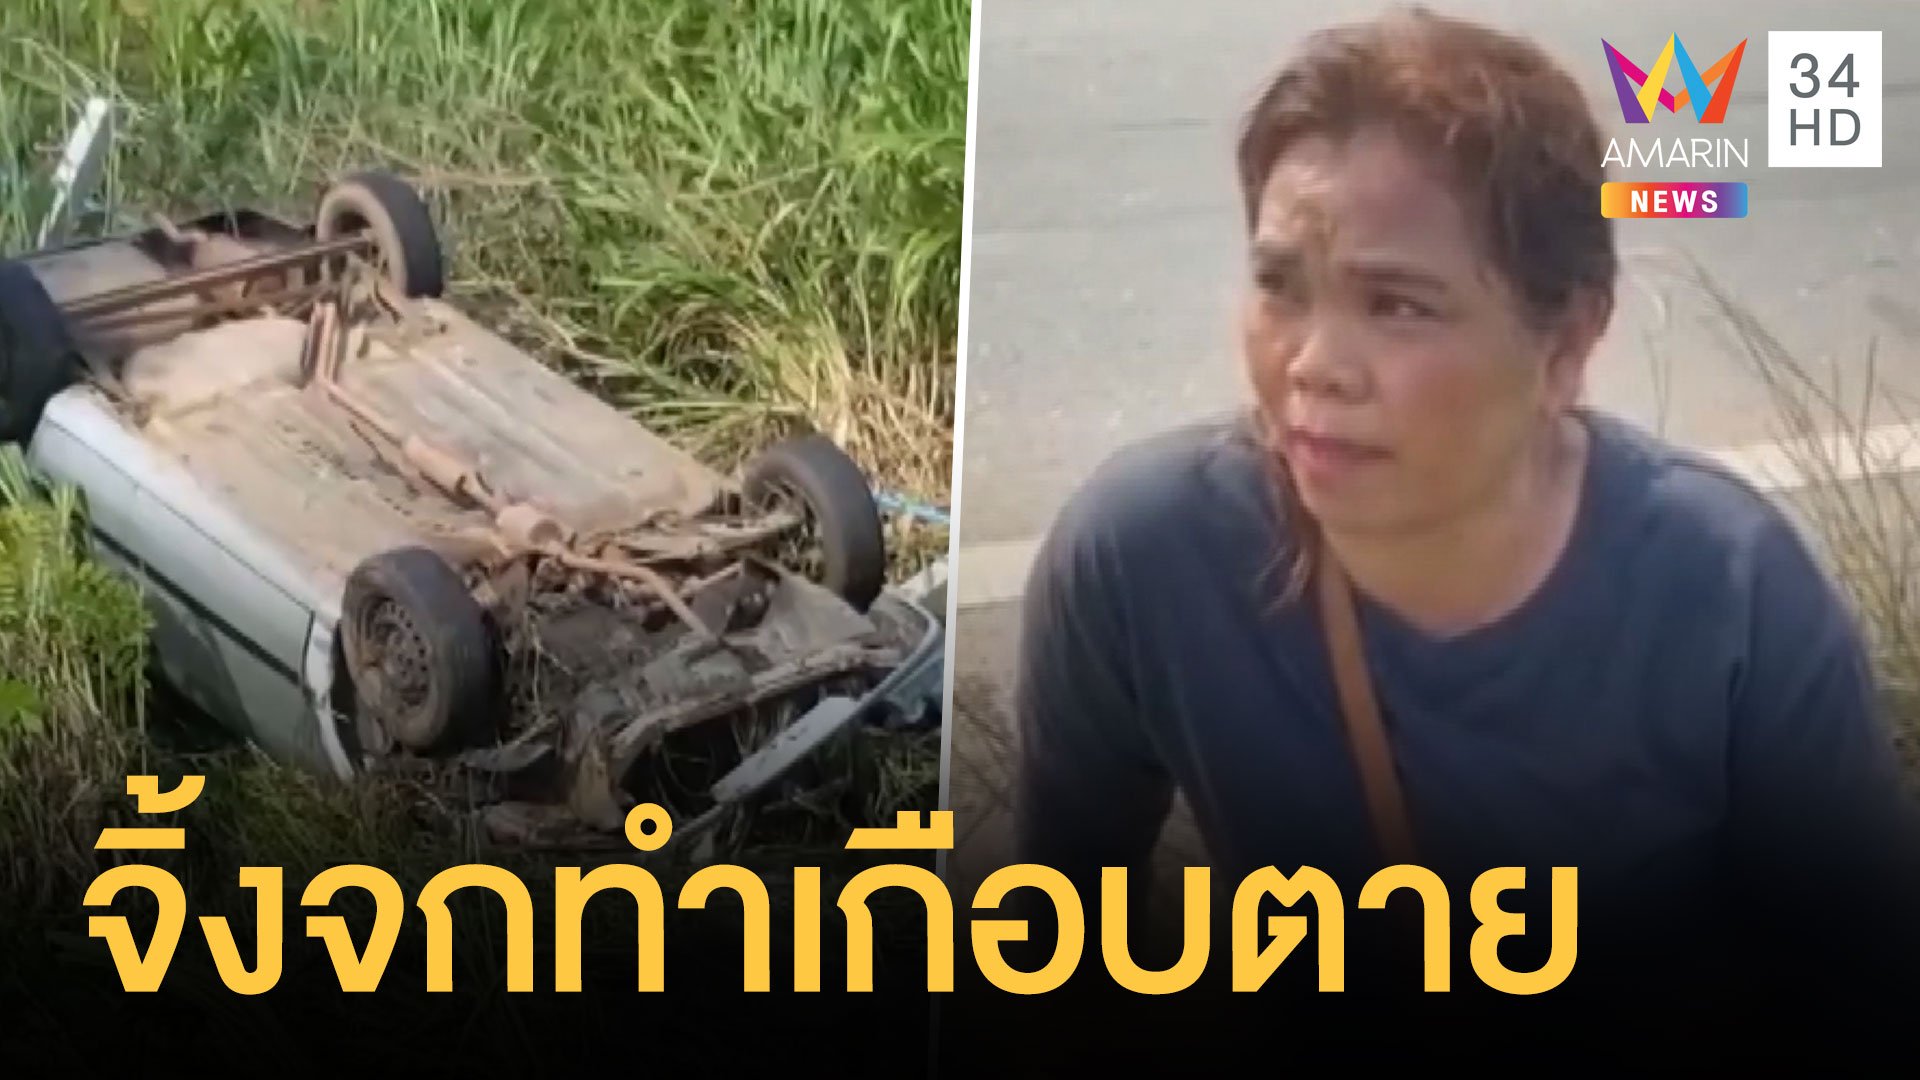 สาวขับรถตกข้างทางเฉียดตาย เพราะตกใจจิ้งจก | ข่าวอรุณอมรินทร์ | 17 พ.ค. 64 | AMARIN TVHD34